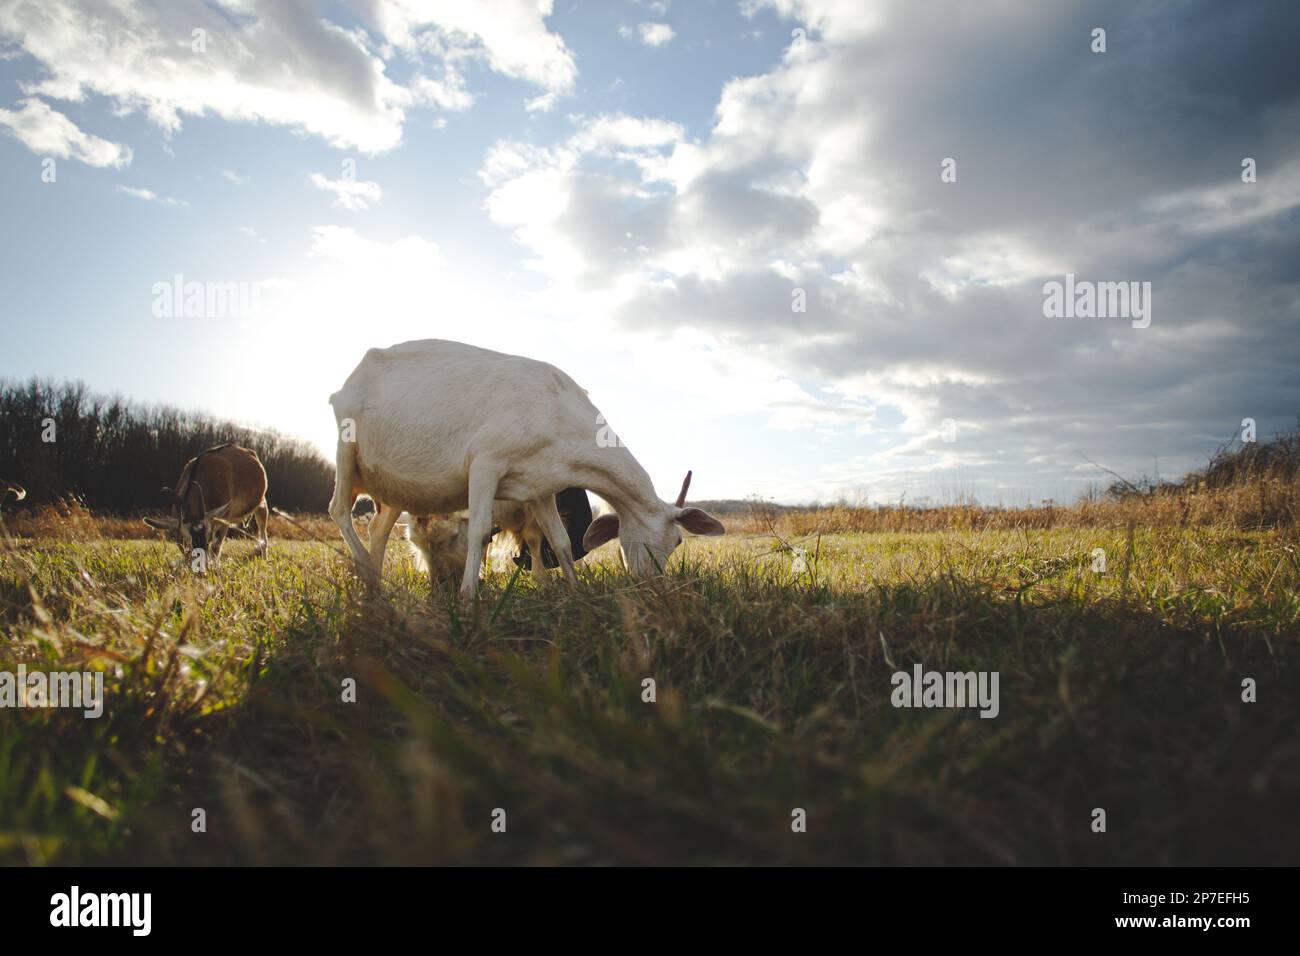 Una capra bianca solitaria si trova in un lussureggiante e verdeggiante pascolo, contentamente pascolo sull'erba circostante Foto Stock